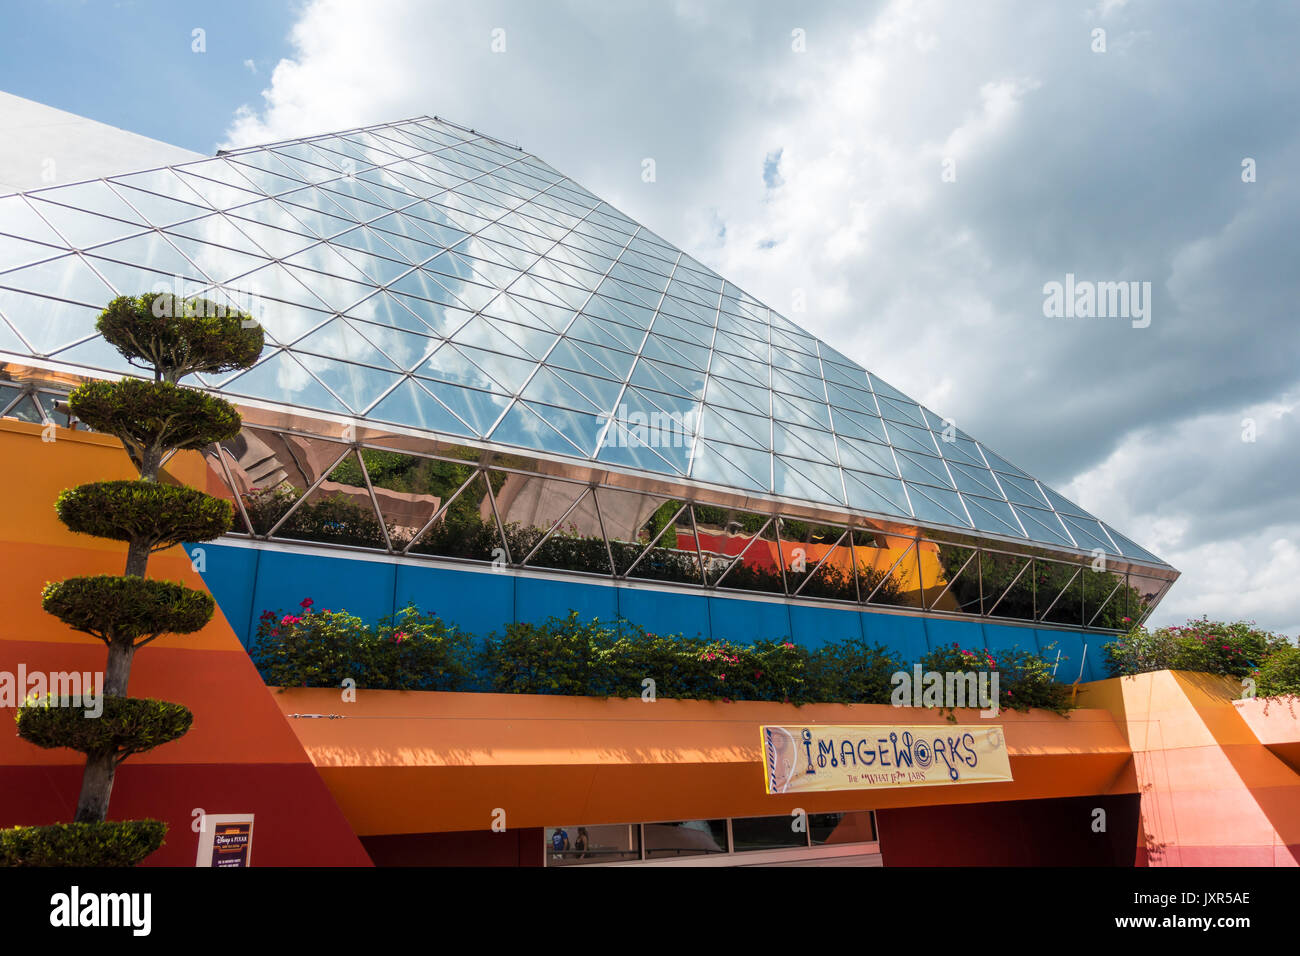 L'imagination pavilion dans epcot, Walt Disney World, Orlando, Floride. Banque D'Images